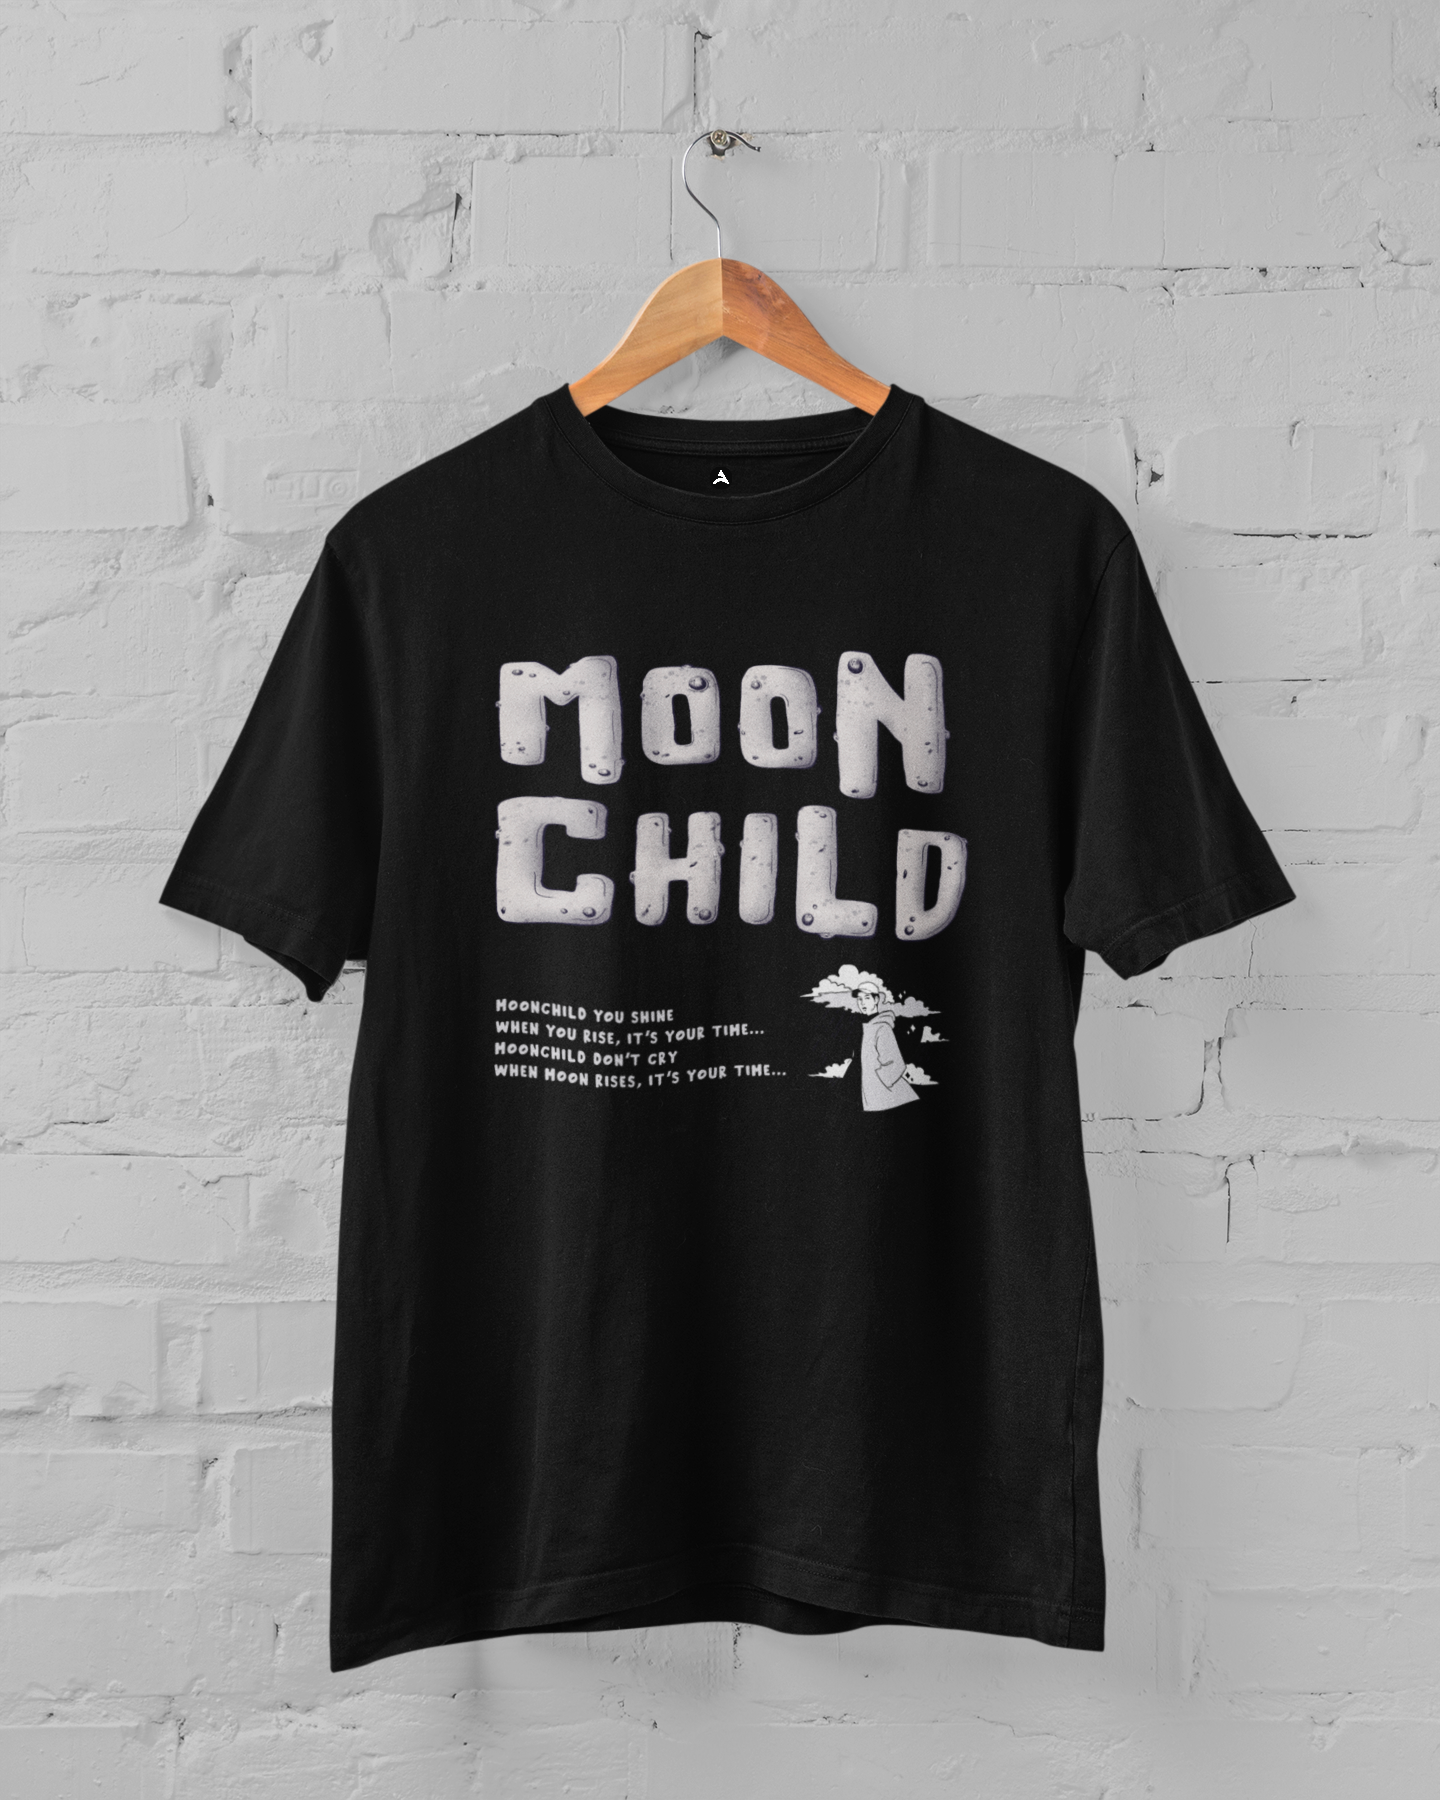 Moonchild: Oversized T-Shirts